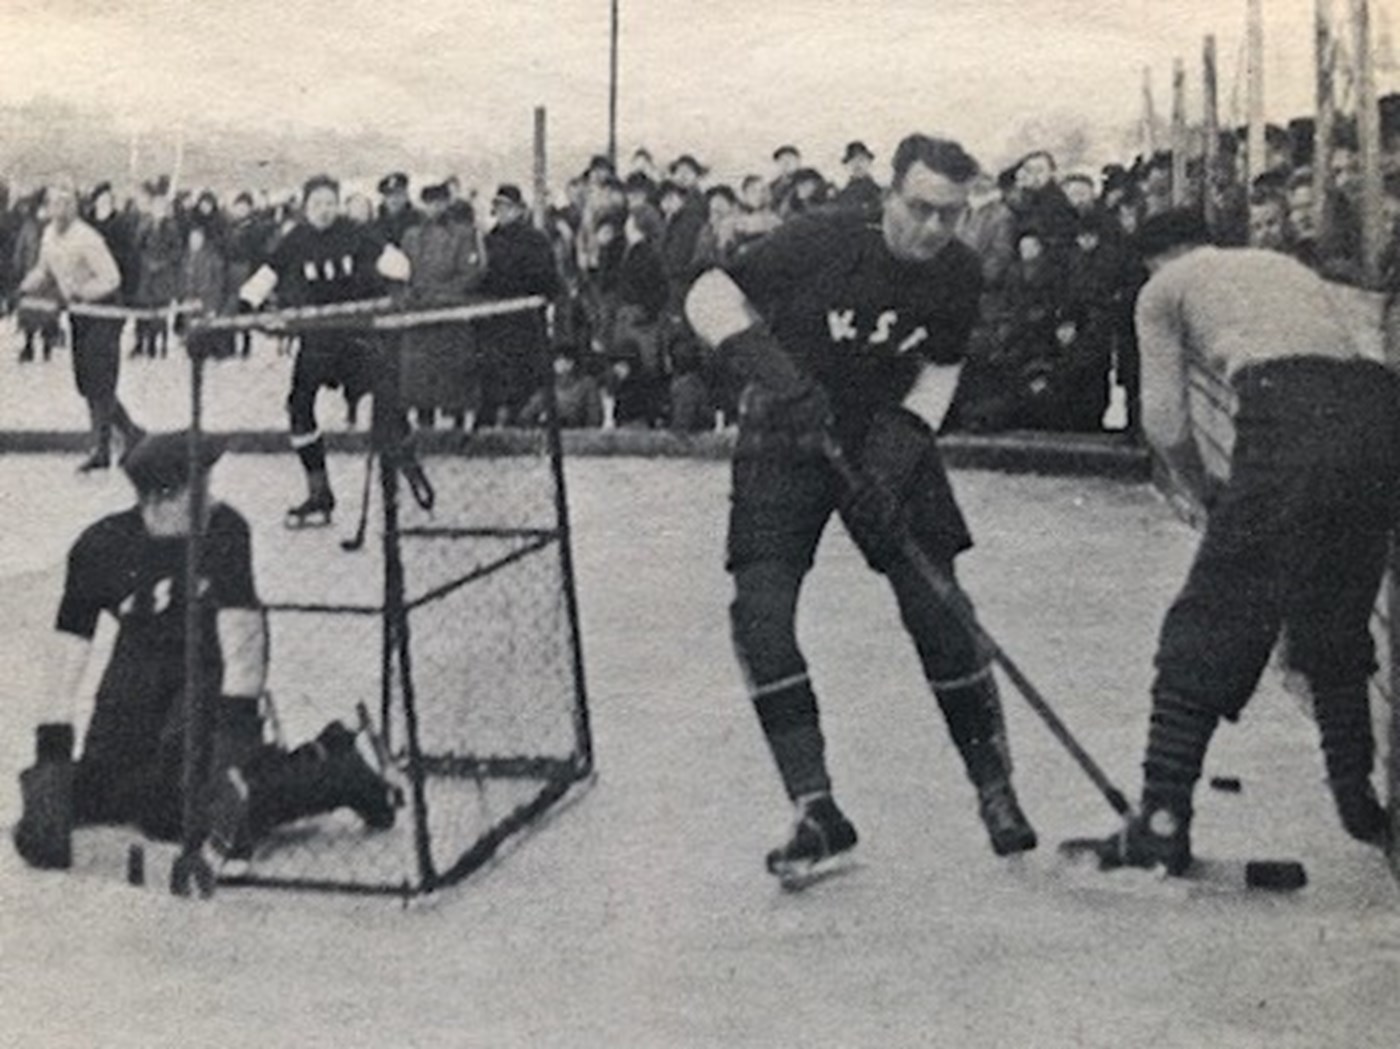 Ishockey i de gode, gamle dage på Peblingesøen i København. Situationen er fra en kamp mellem KSF og et svensk hold i 1929. Læg mærke til de lave bander, spillernes ringe beskyttelsesudstyr og de mange tilskuere.